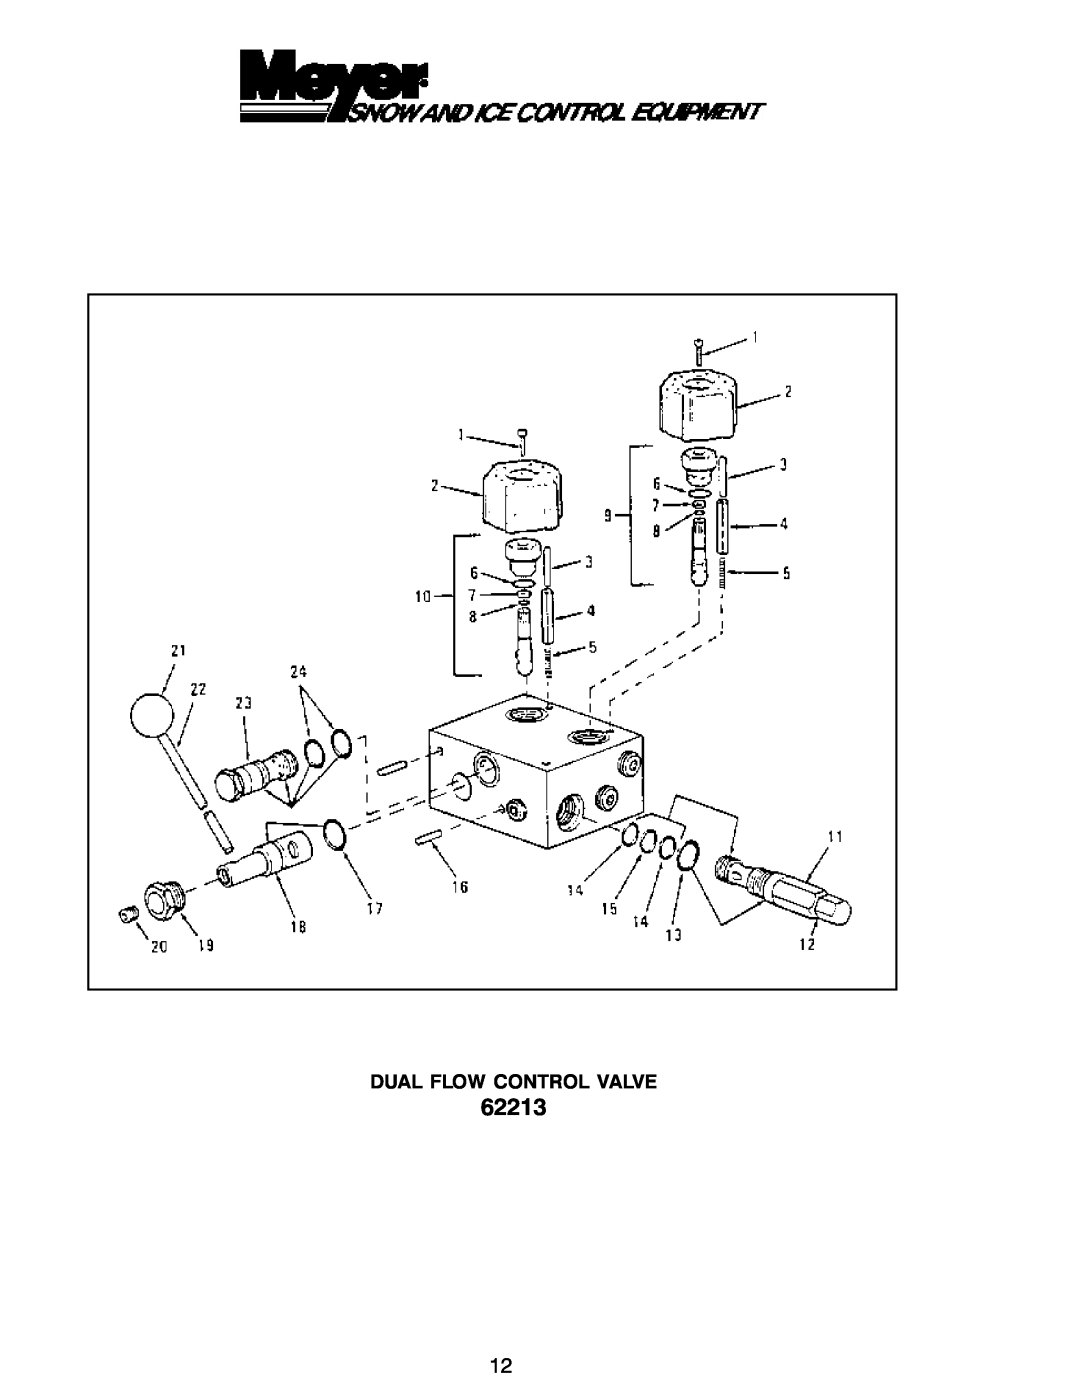 Power Acoustik M-944, M-940, M-1044 instruction manual 62213, Dual Flow Control Valve 